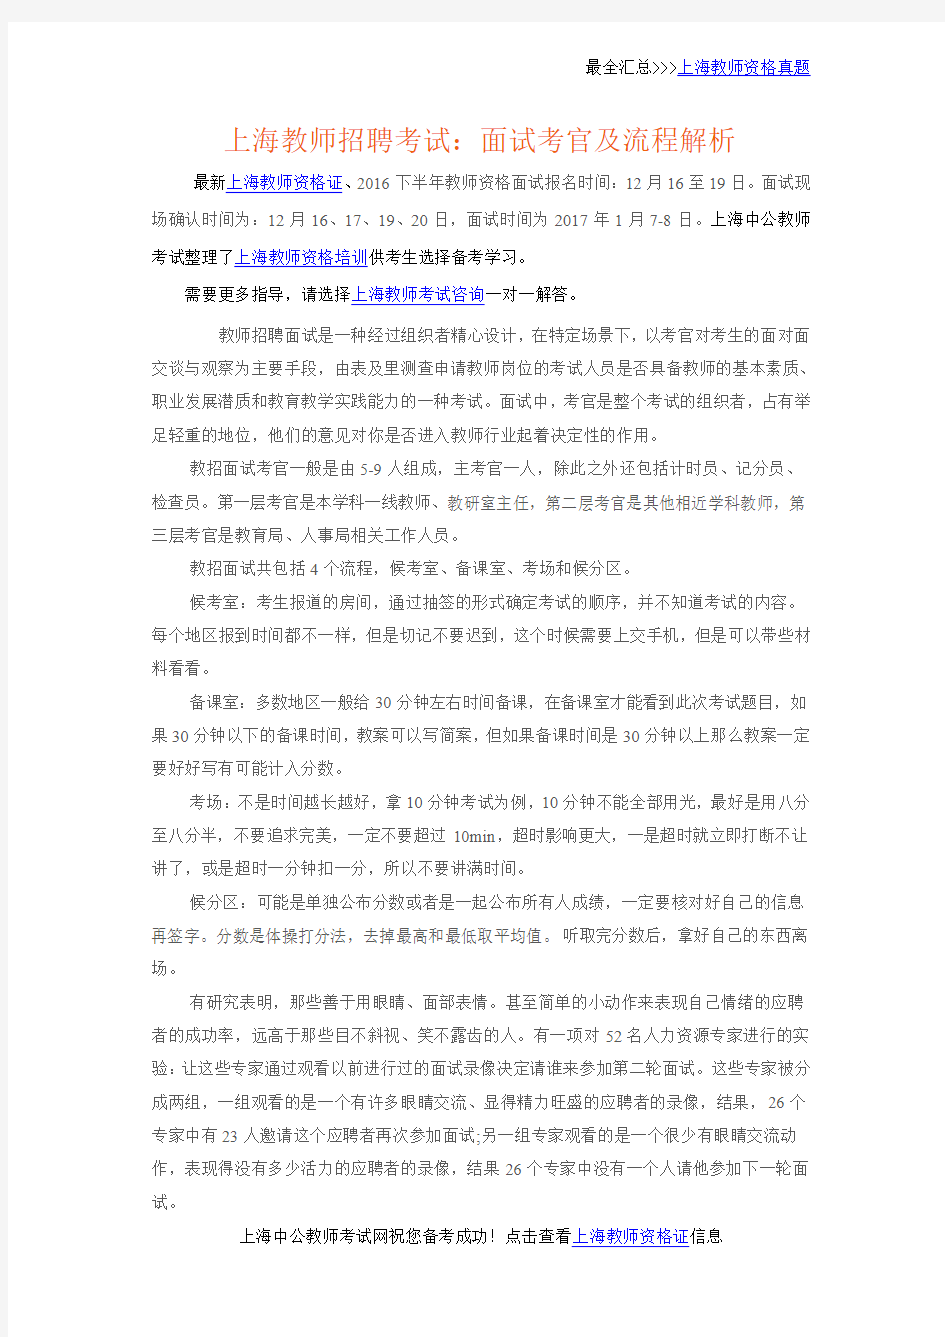 上海教师招聘考试：面试考官及流程解析